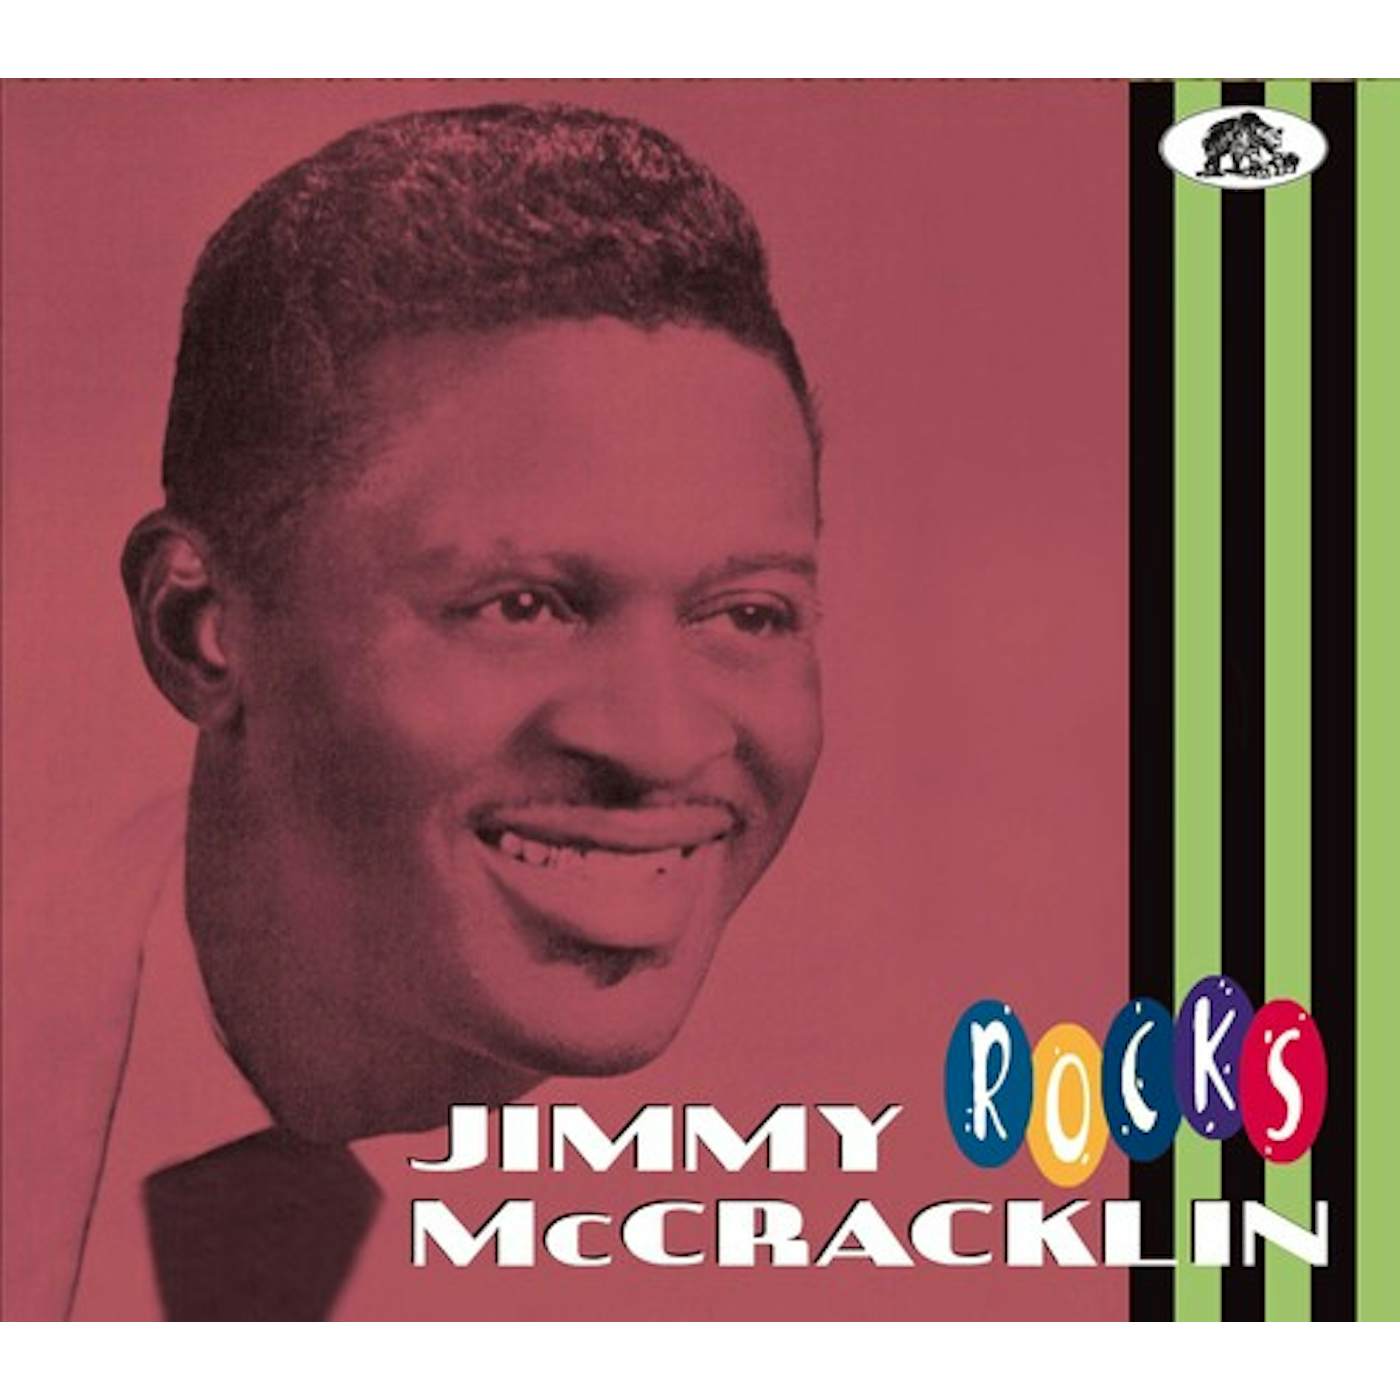 Jimmy McCracklin ROCKS CD